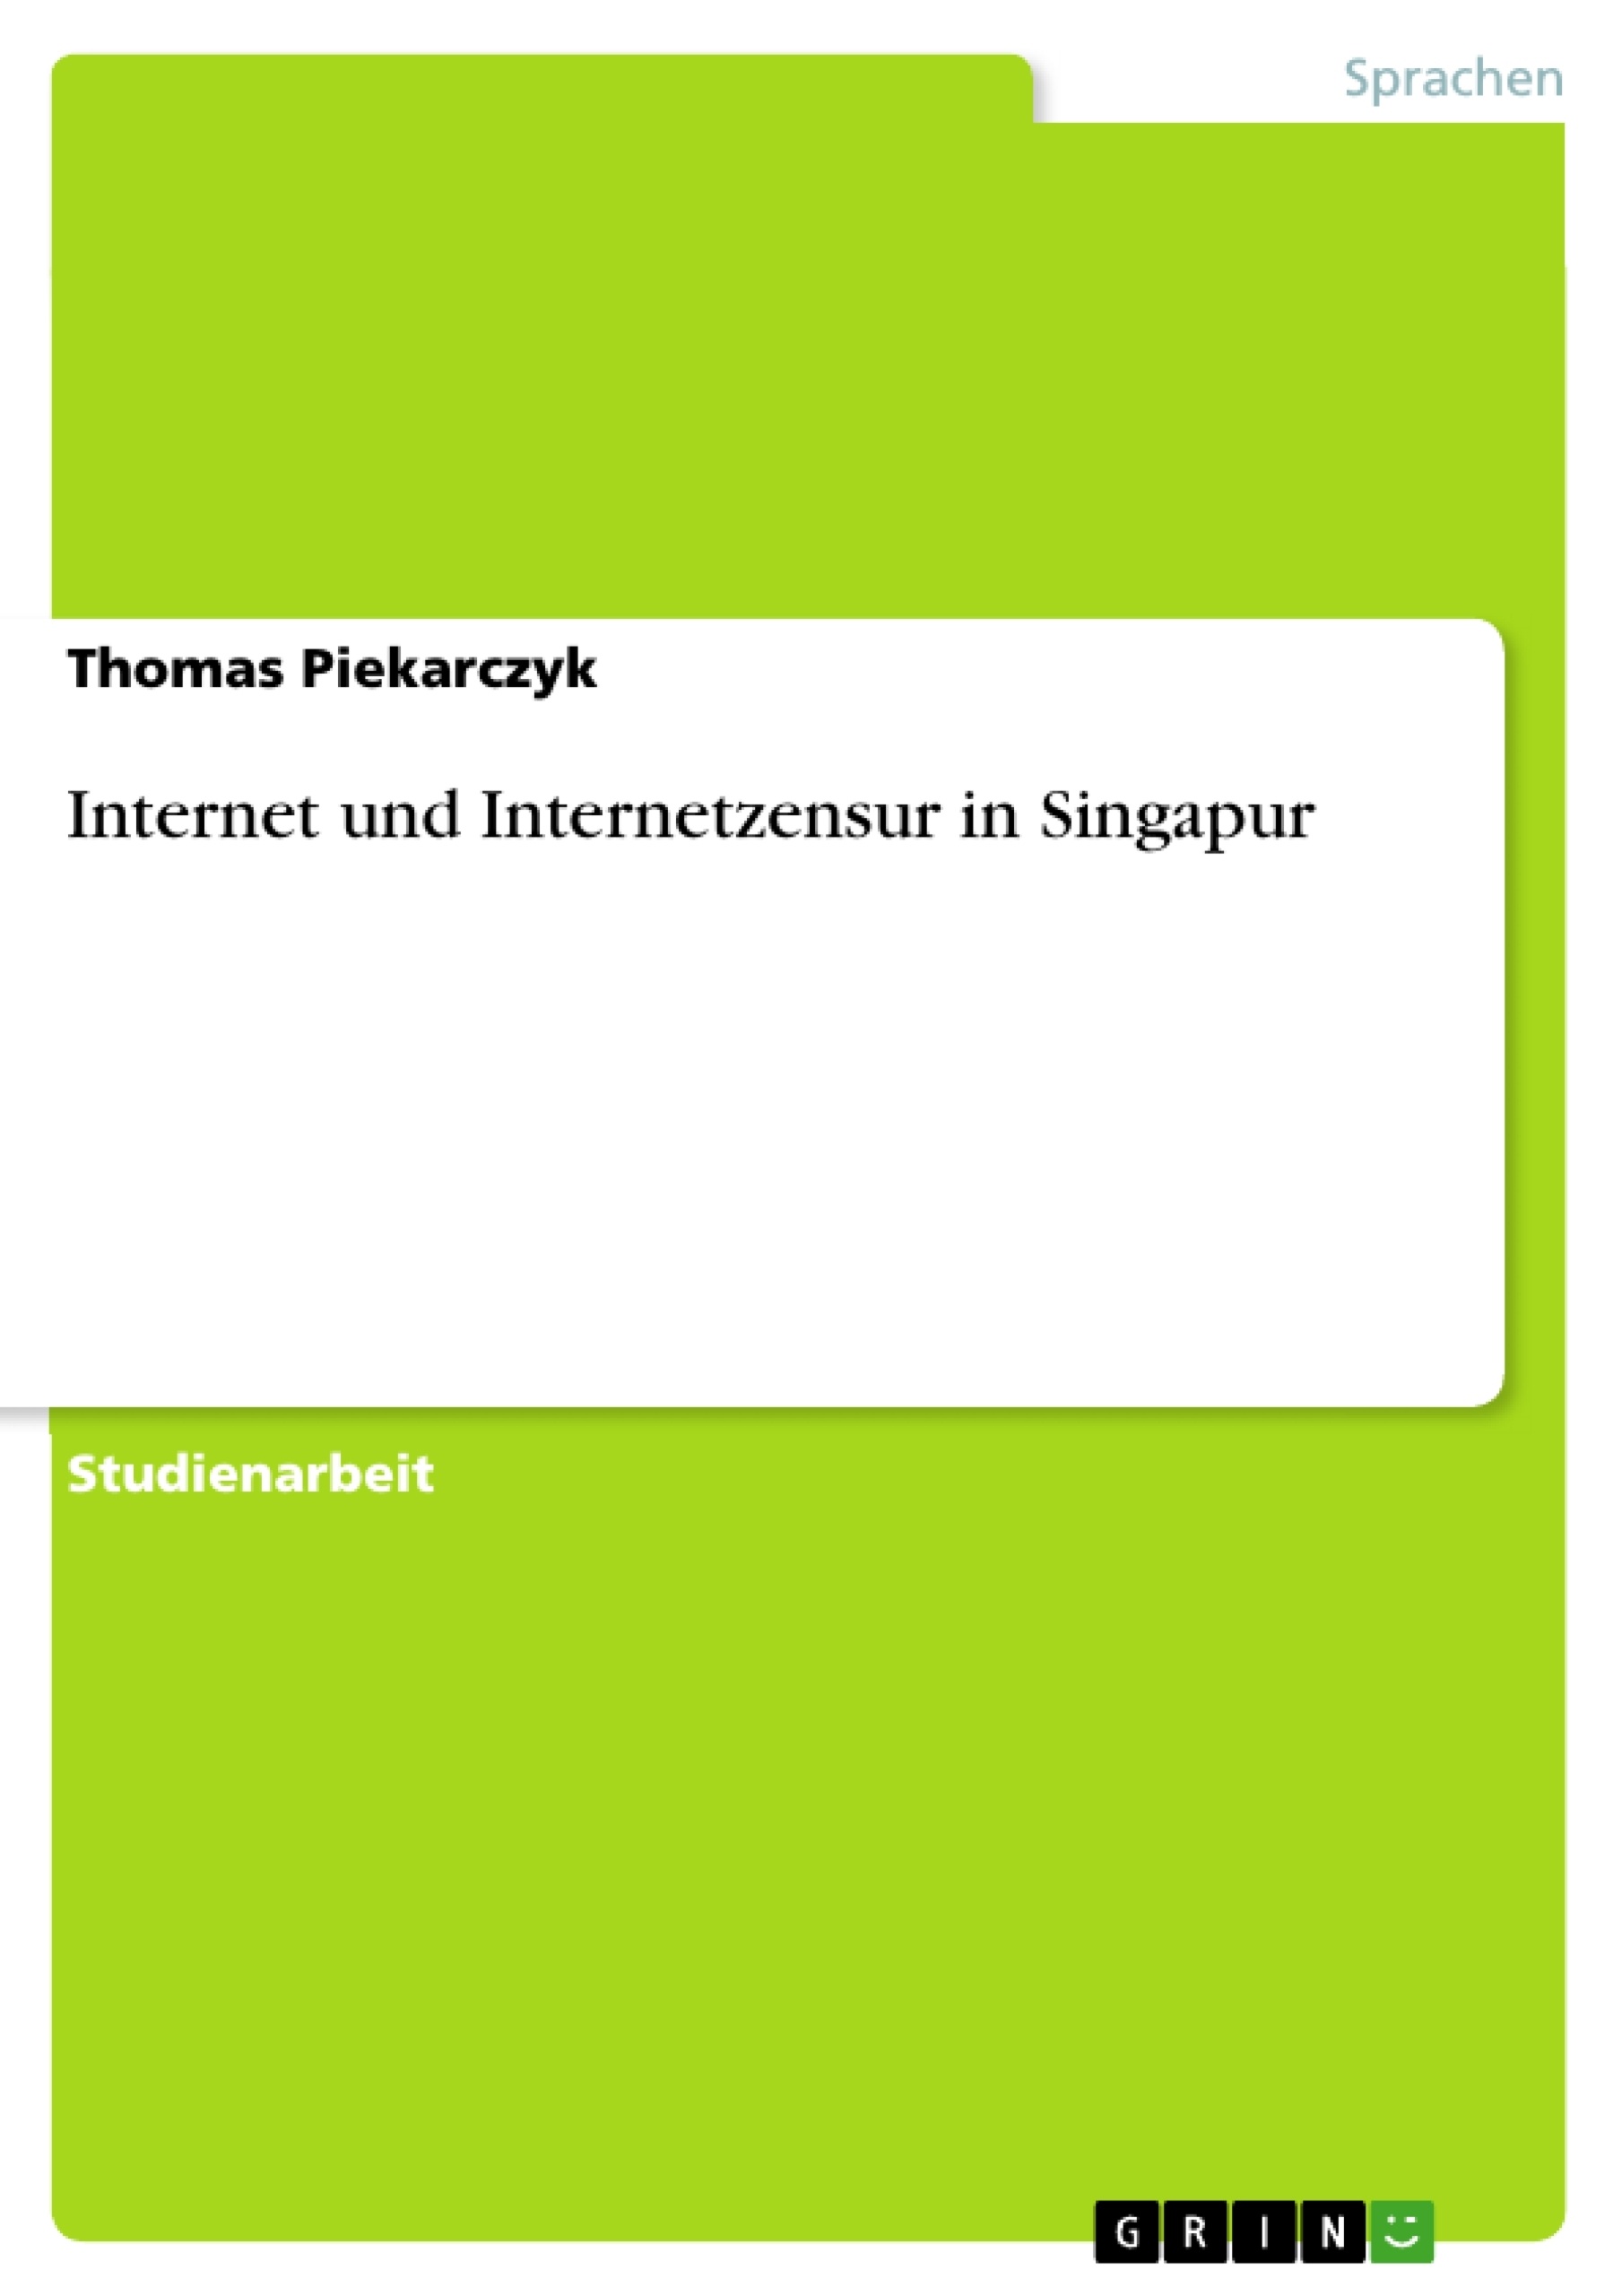 Título: Internet und Internetzensur in Singapur